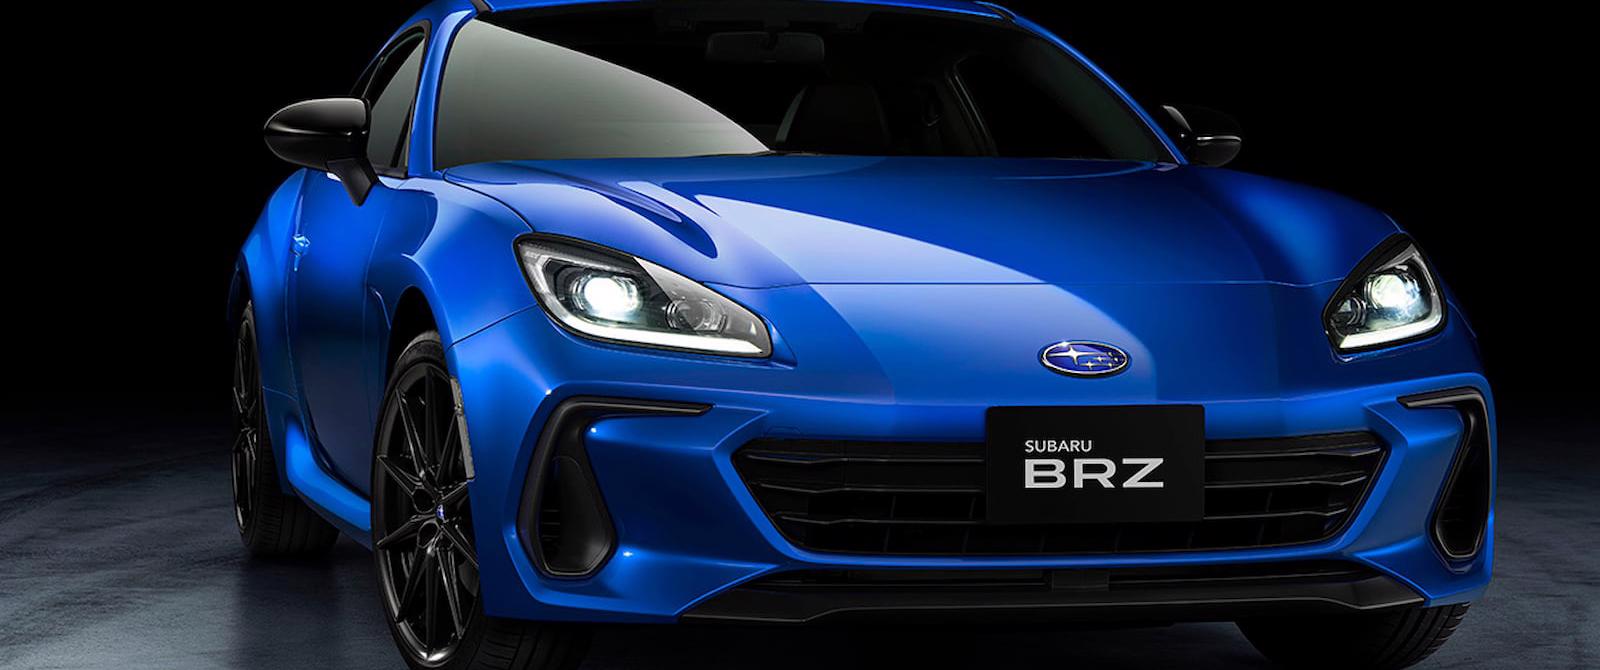 Subaru giới thiệu phiên bản giới hạn đặc biệt của BRZ